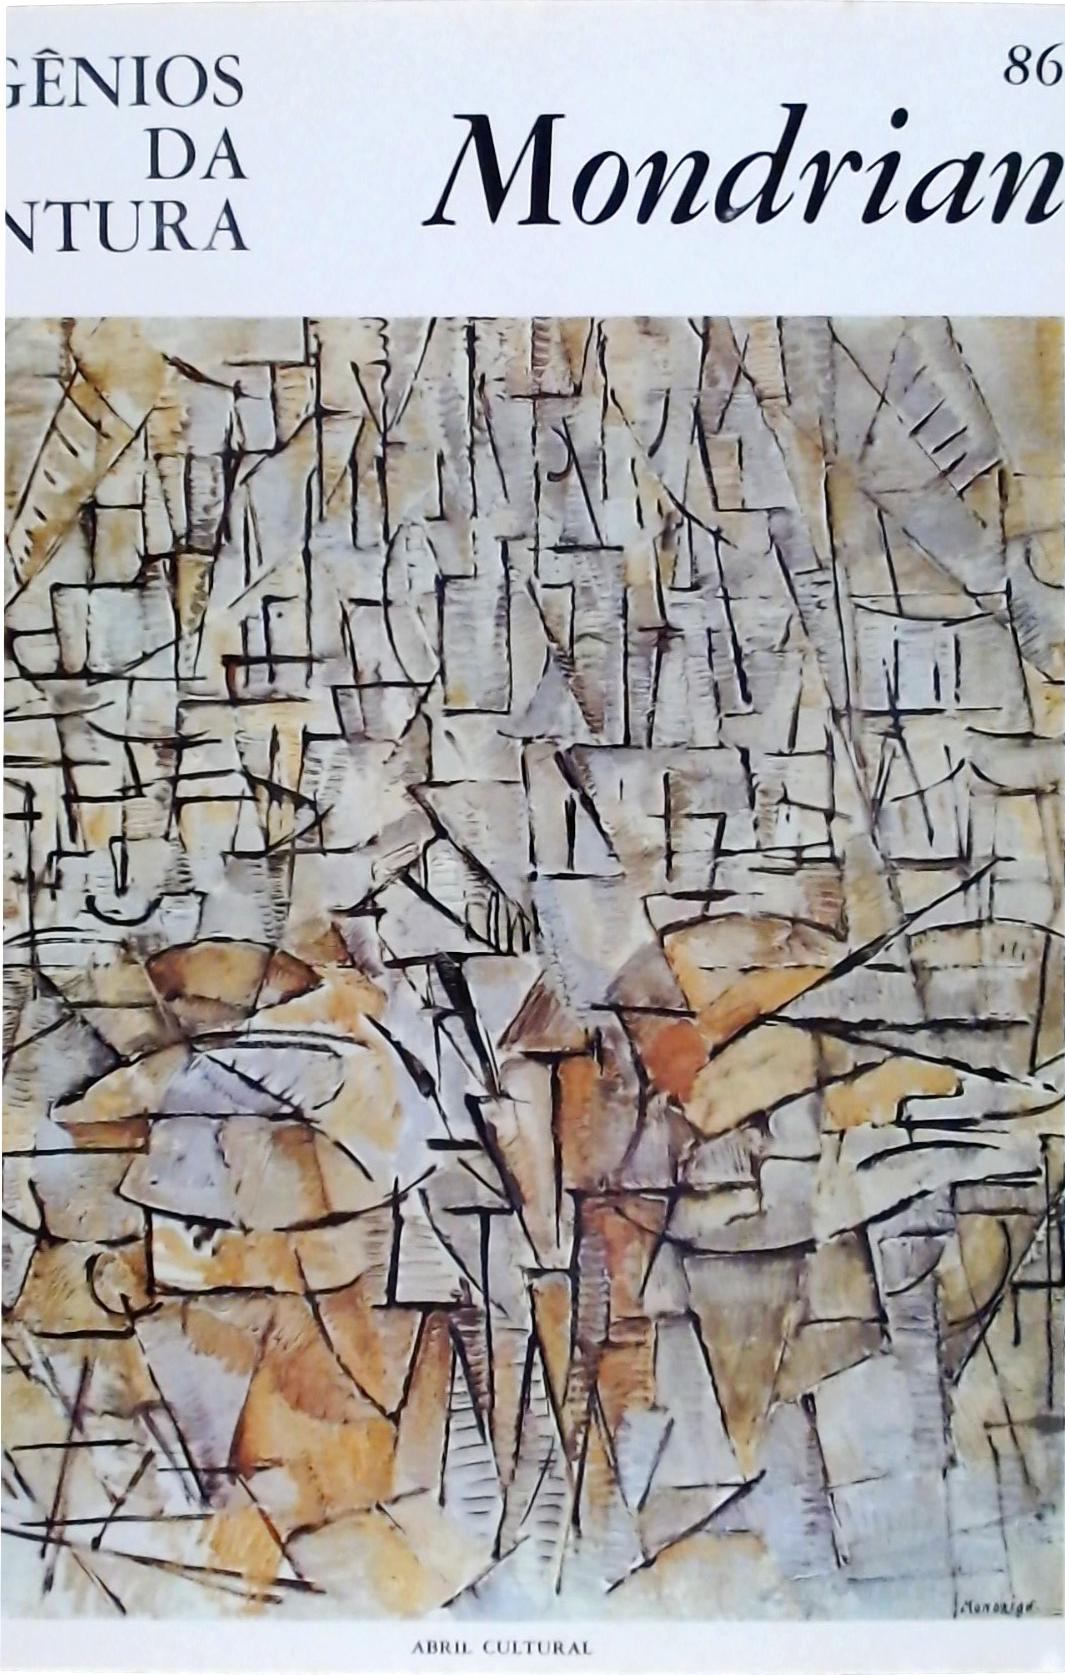 Gênios Da Pintura, Mondrian